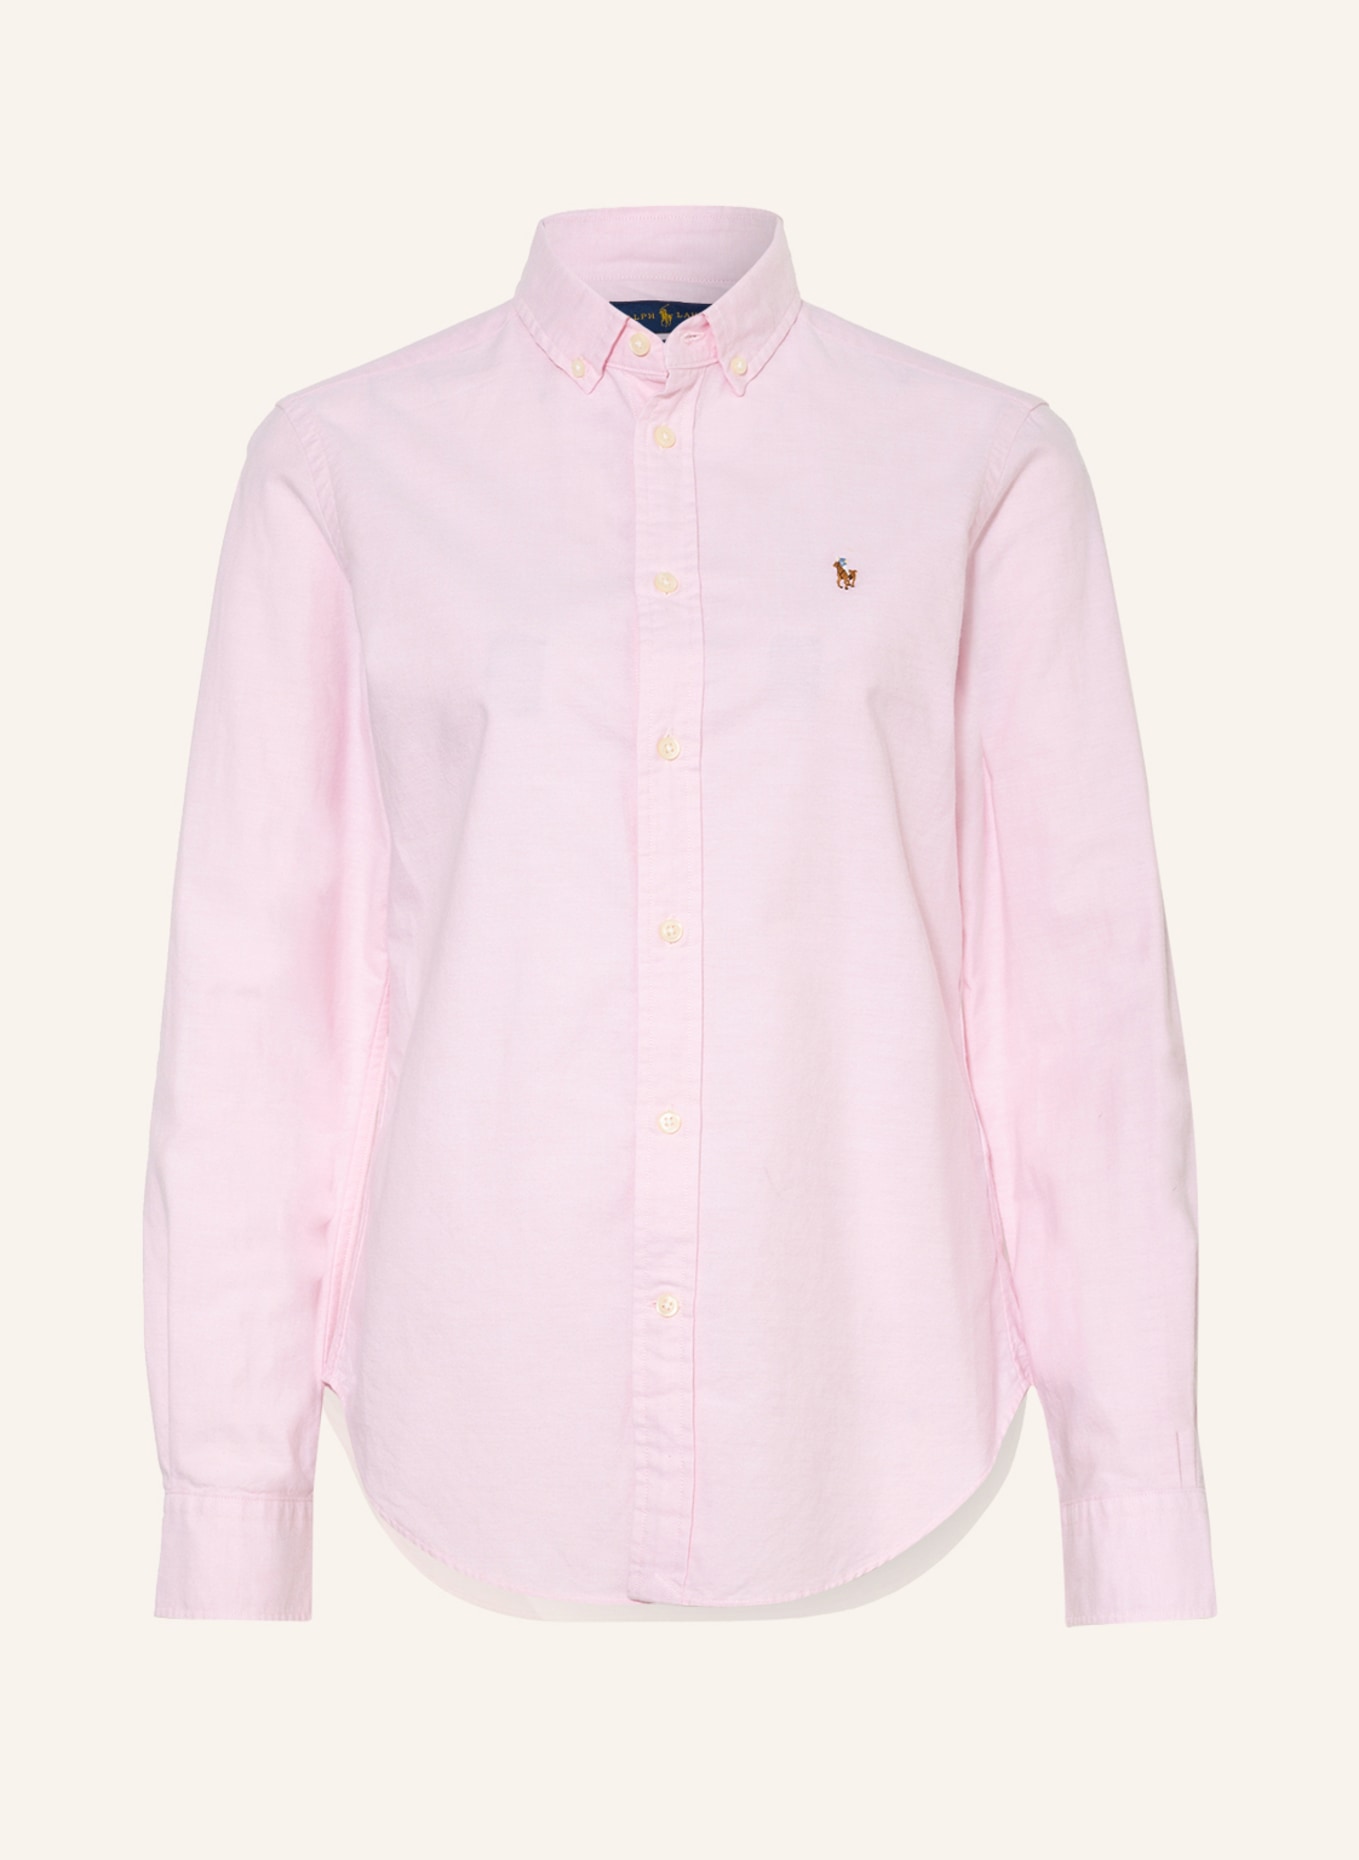 POLO RALPH LAUREN Shirt blouse, Color: PINK (Image 1)